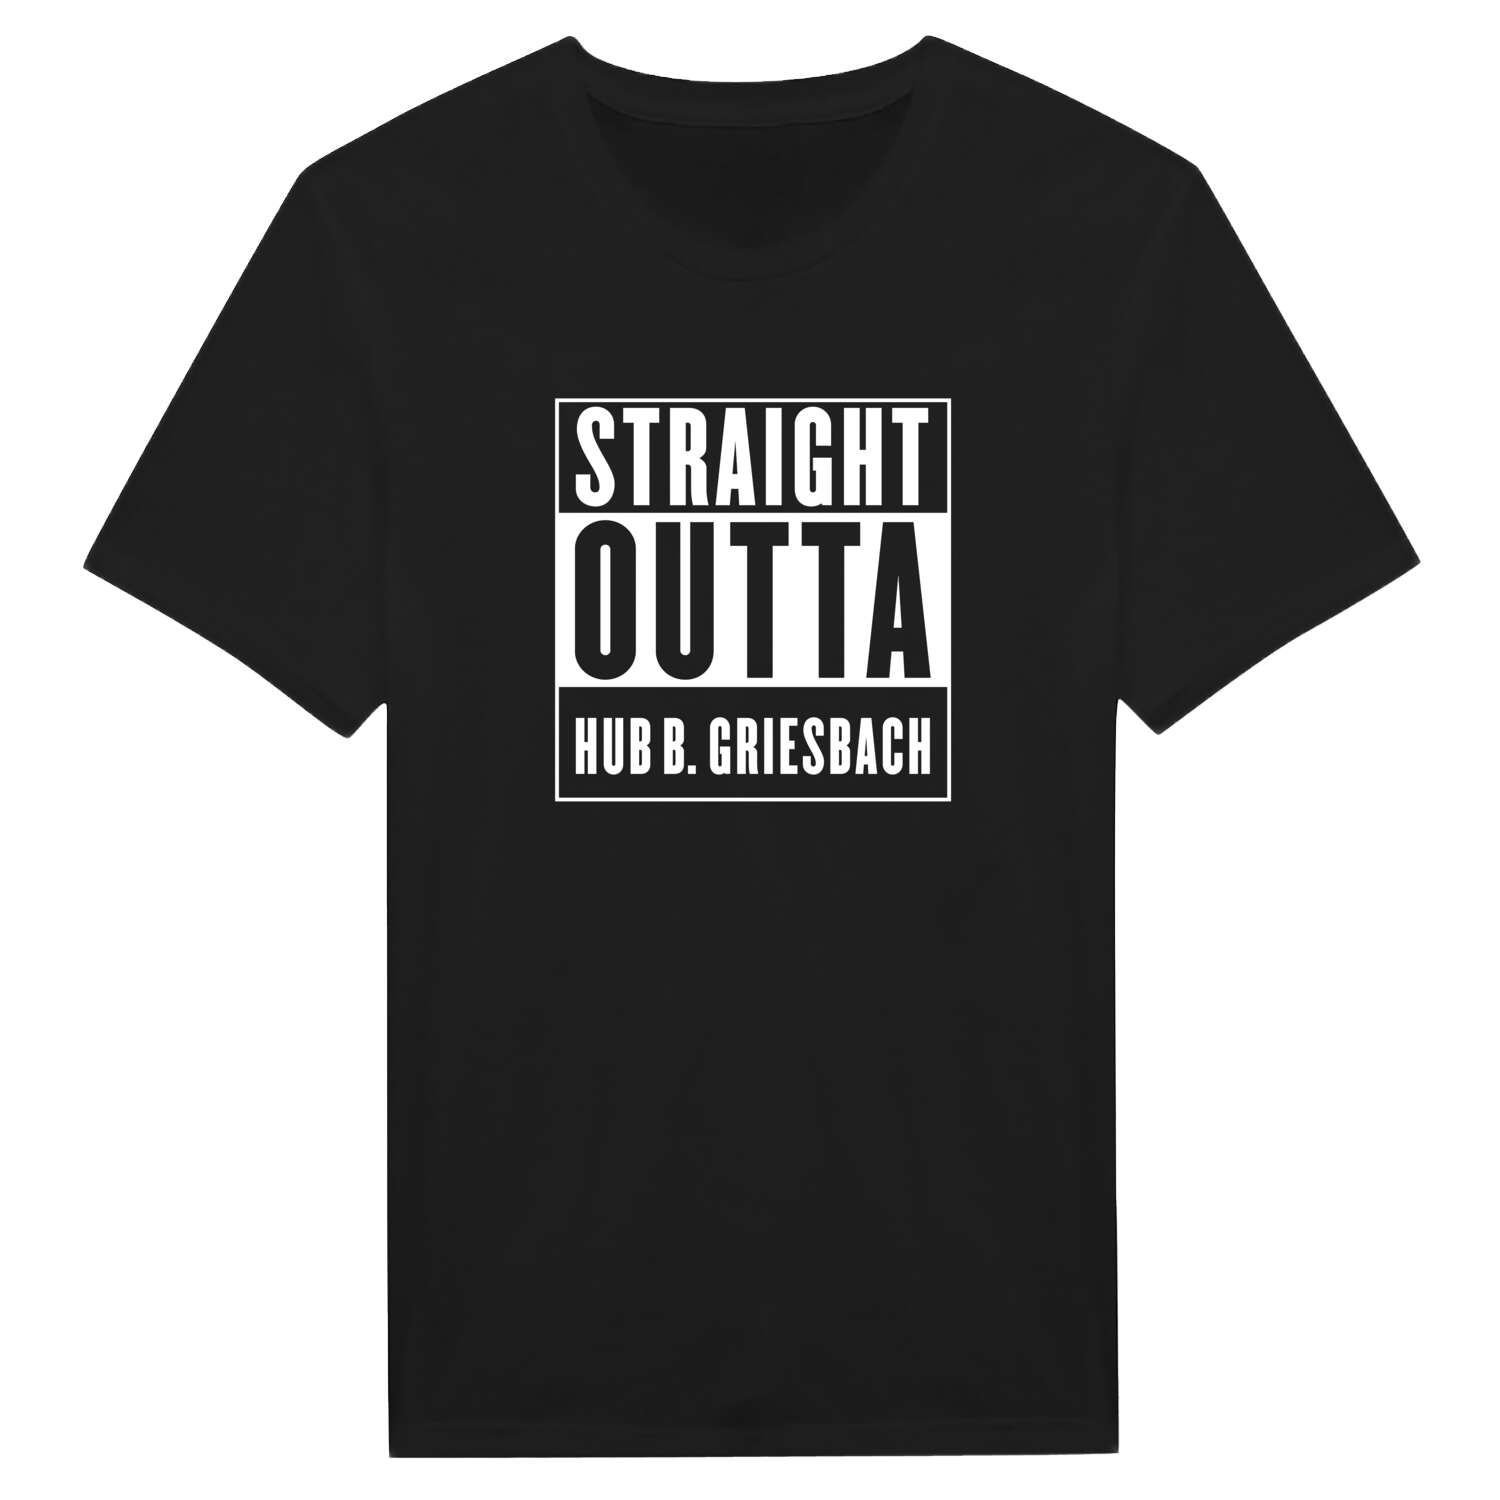 Hub b. Griesbach T-Shirt »Straight Outta«